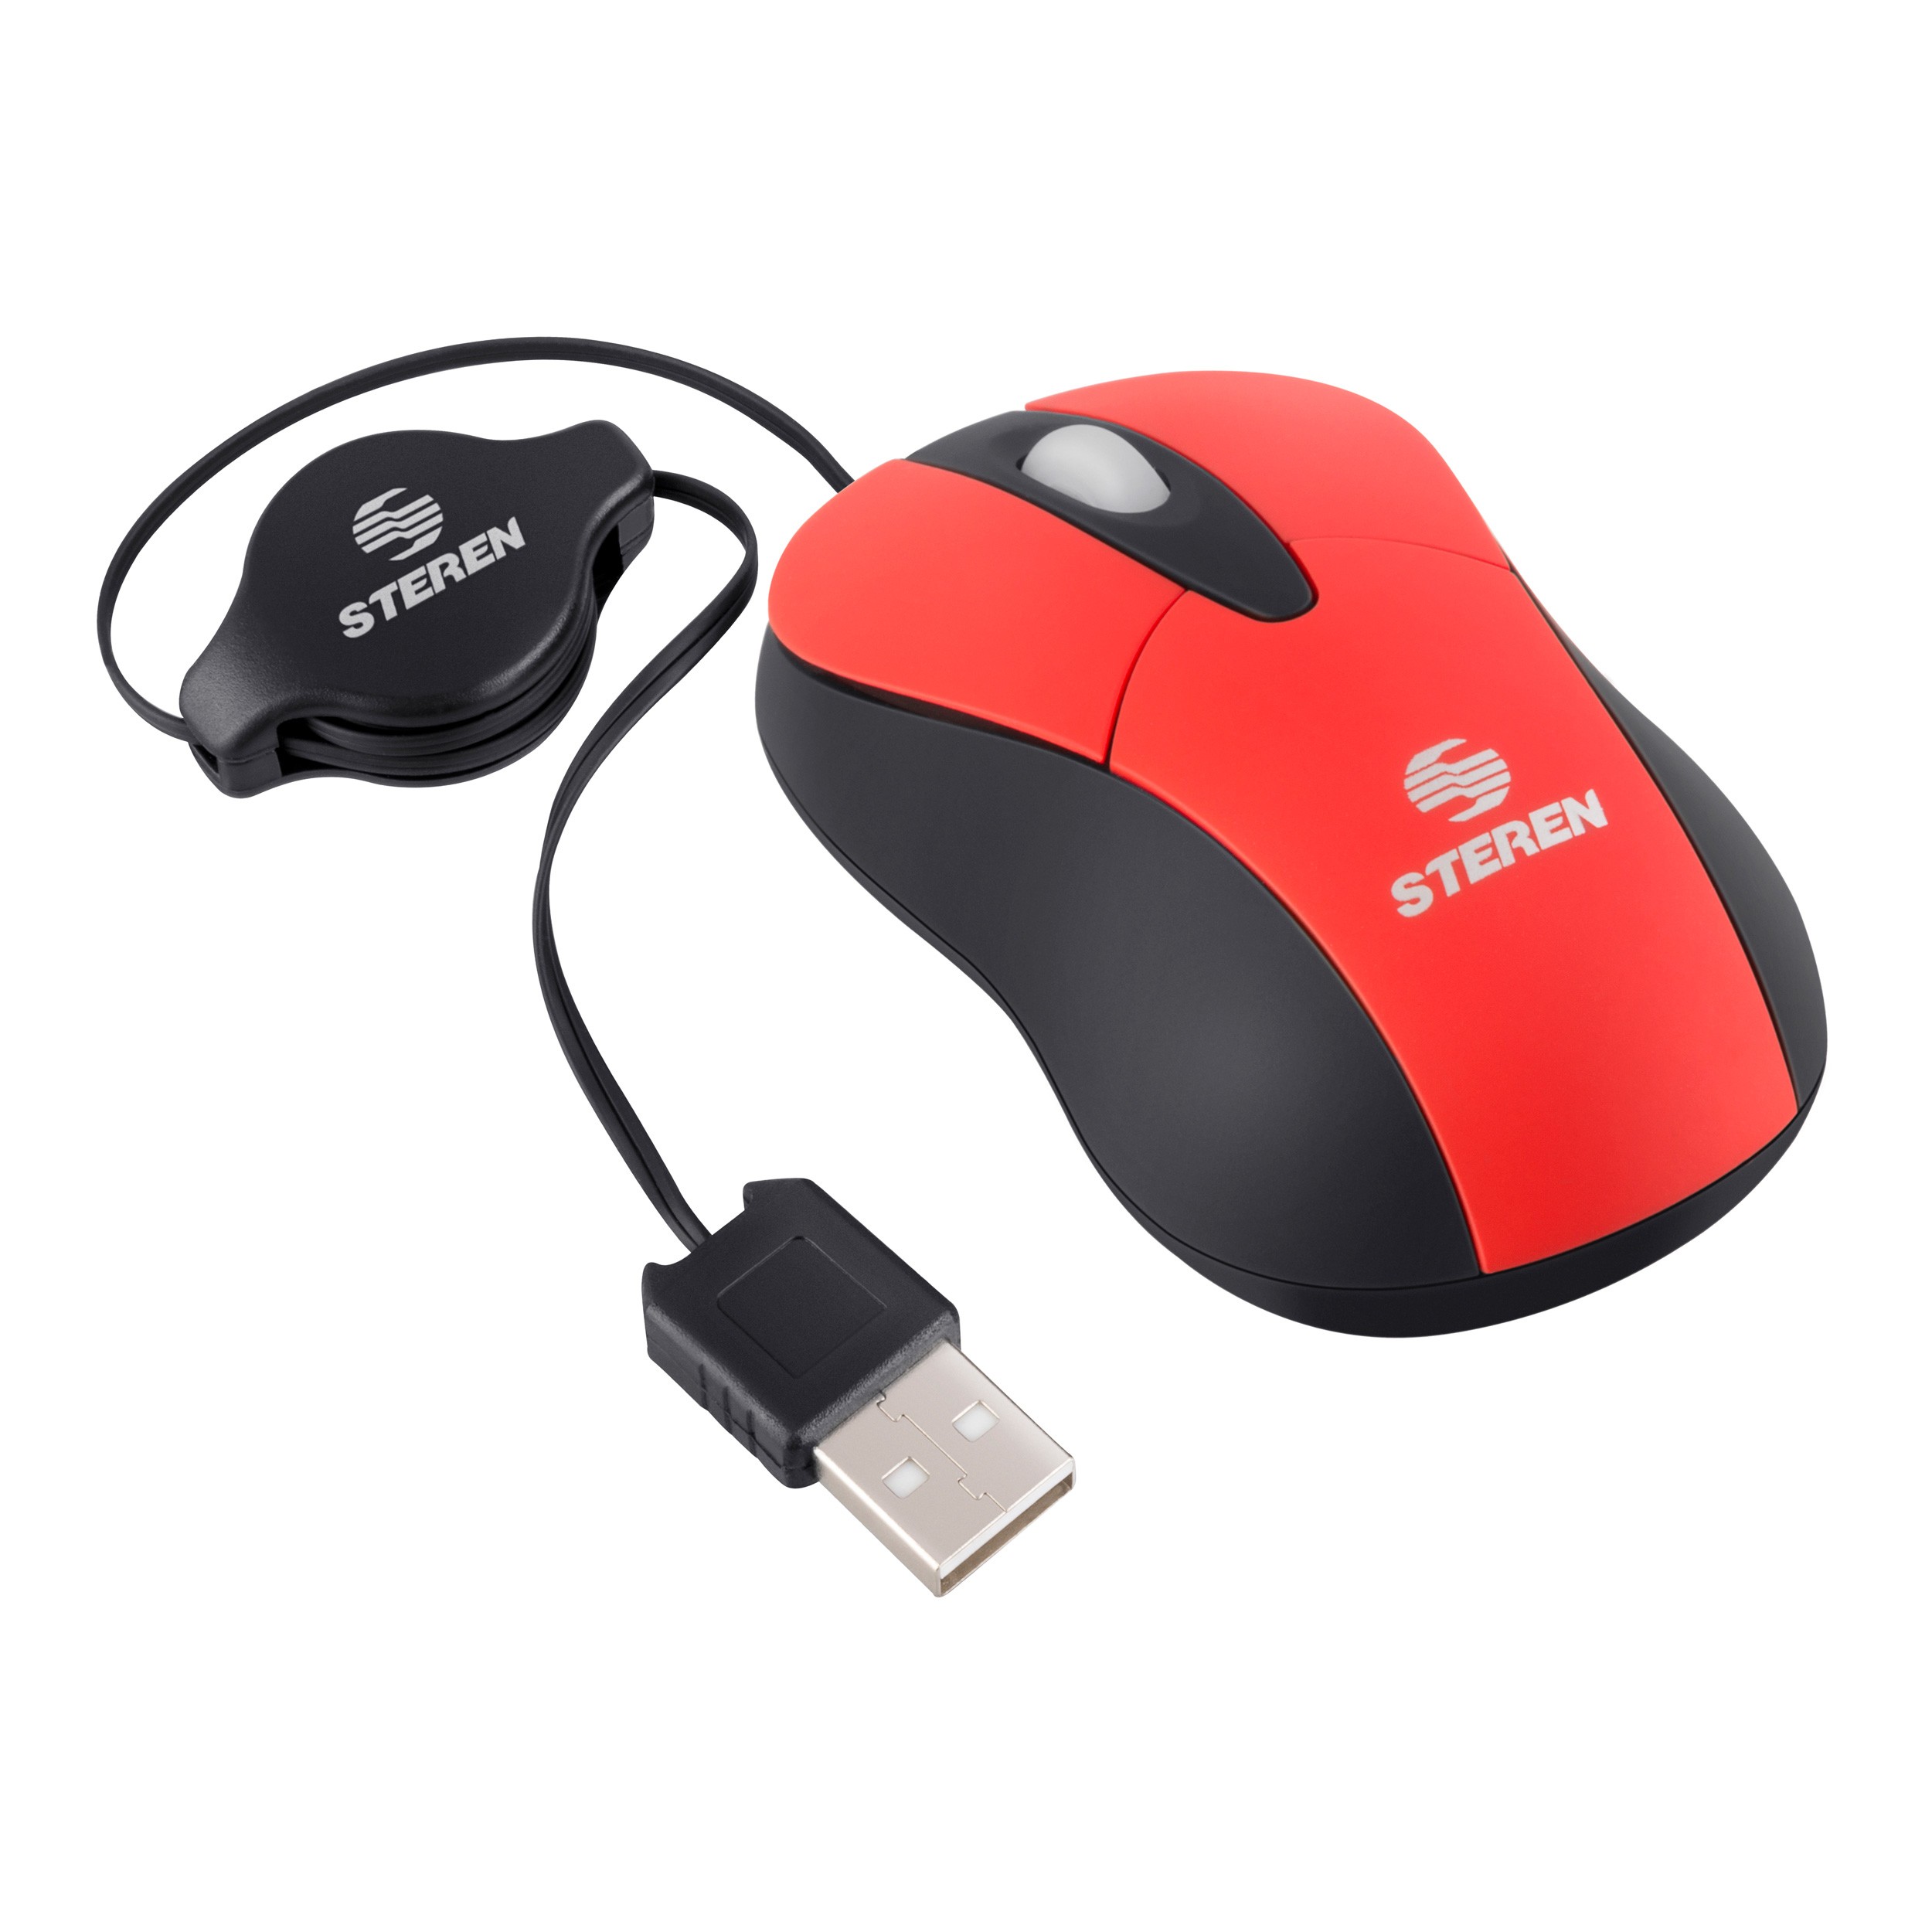 Mini mouse óptico USB con cable retráctil, rojo